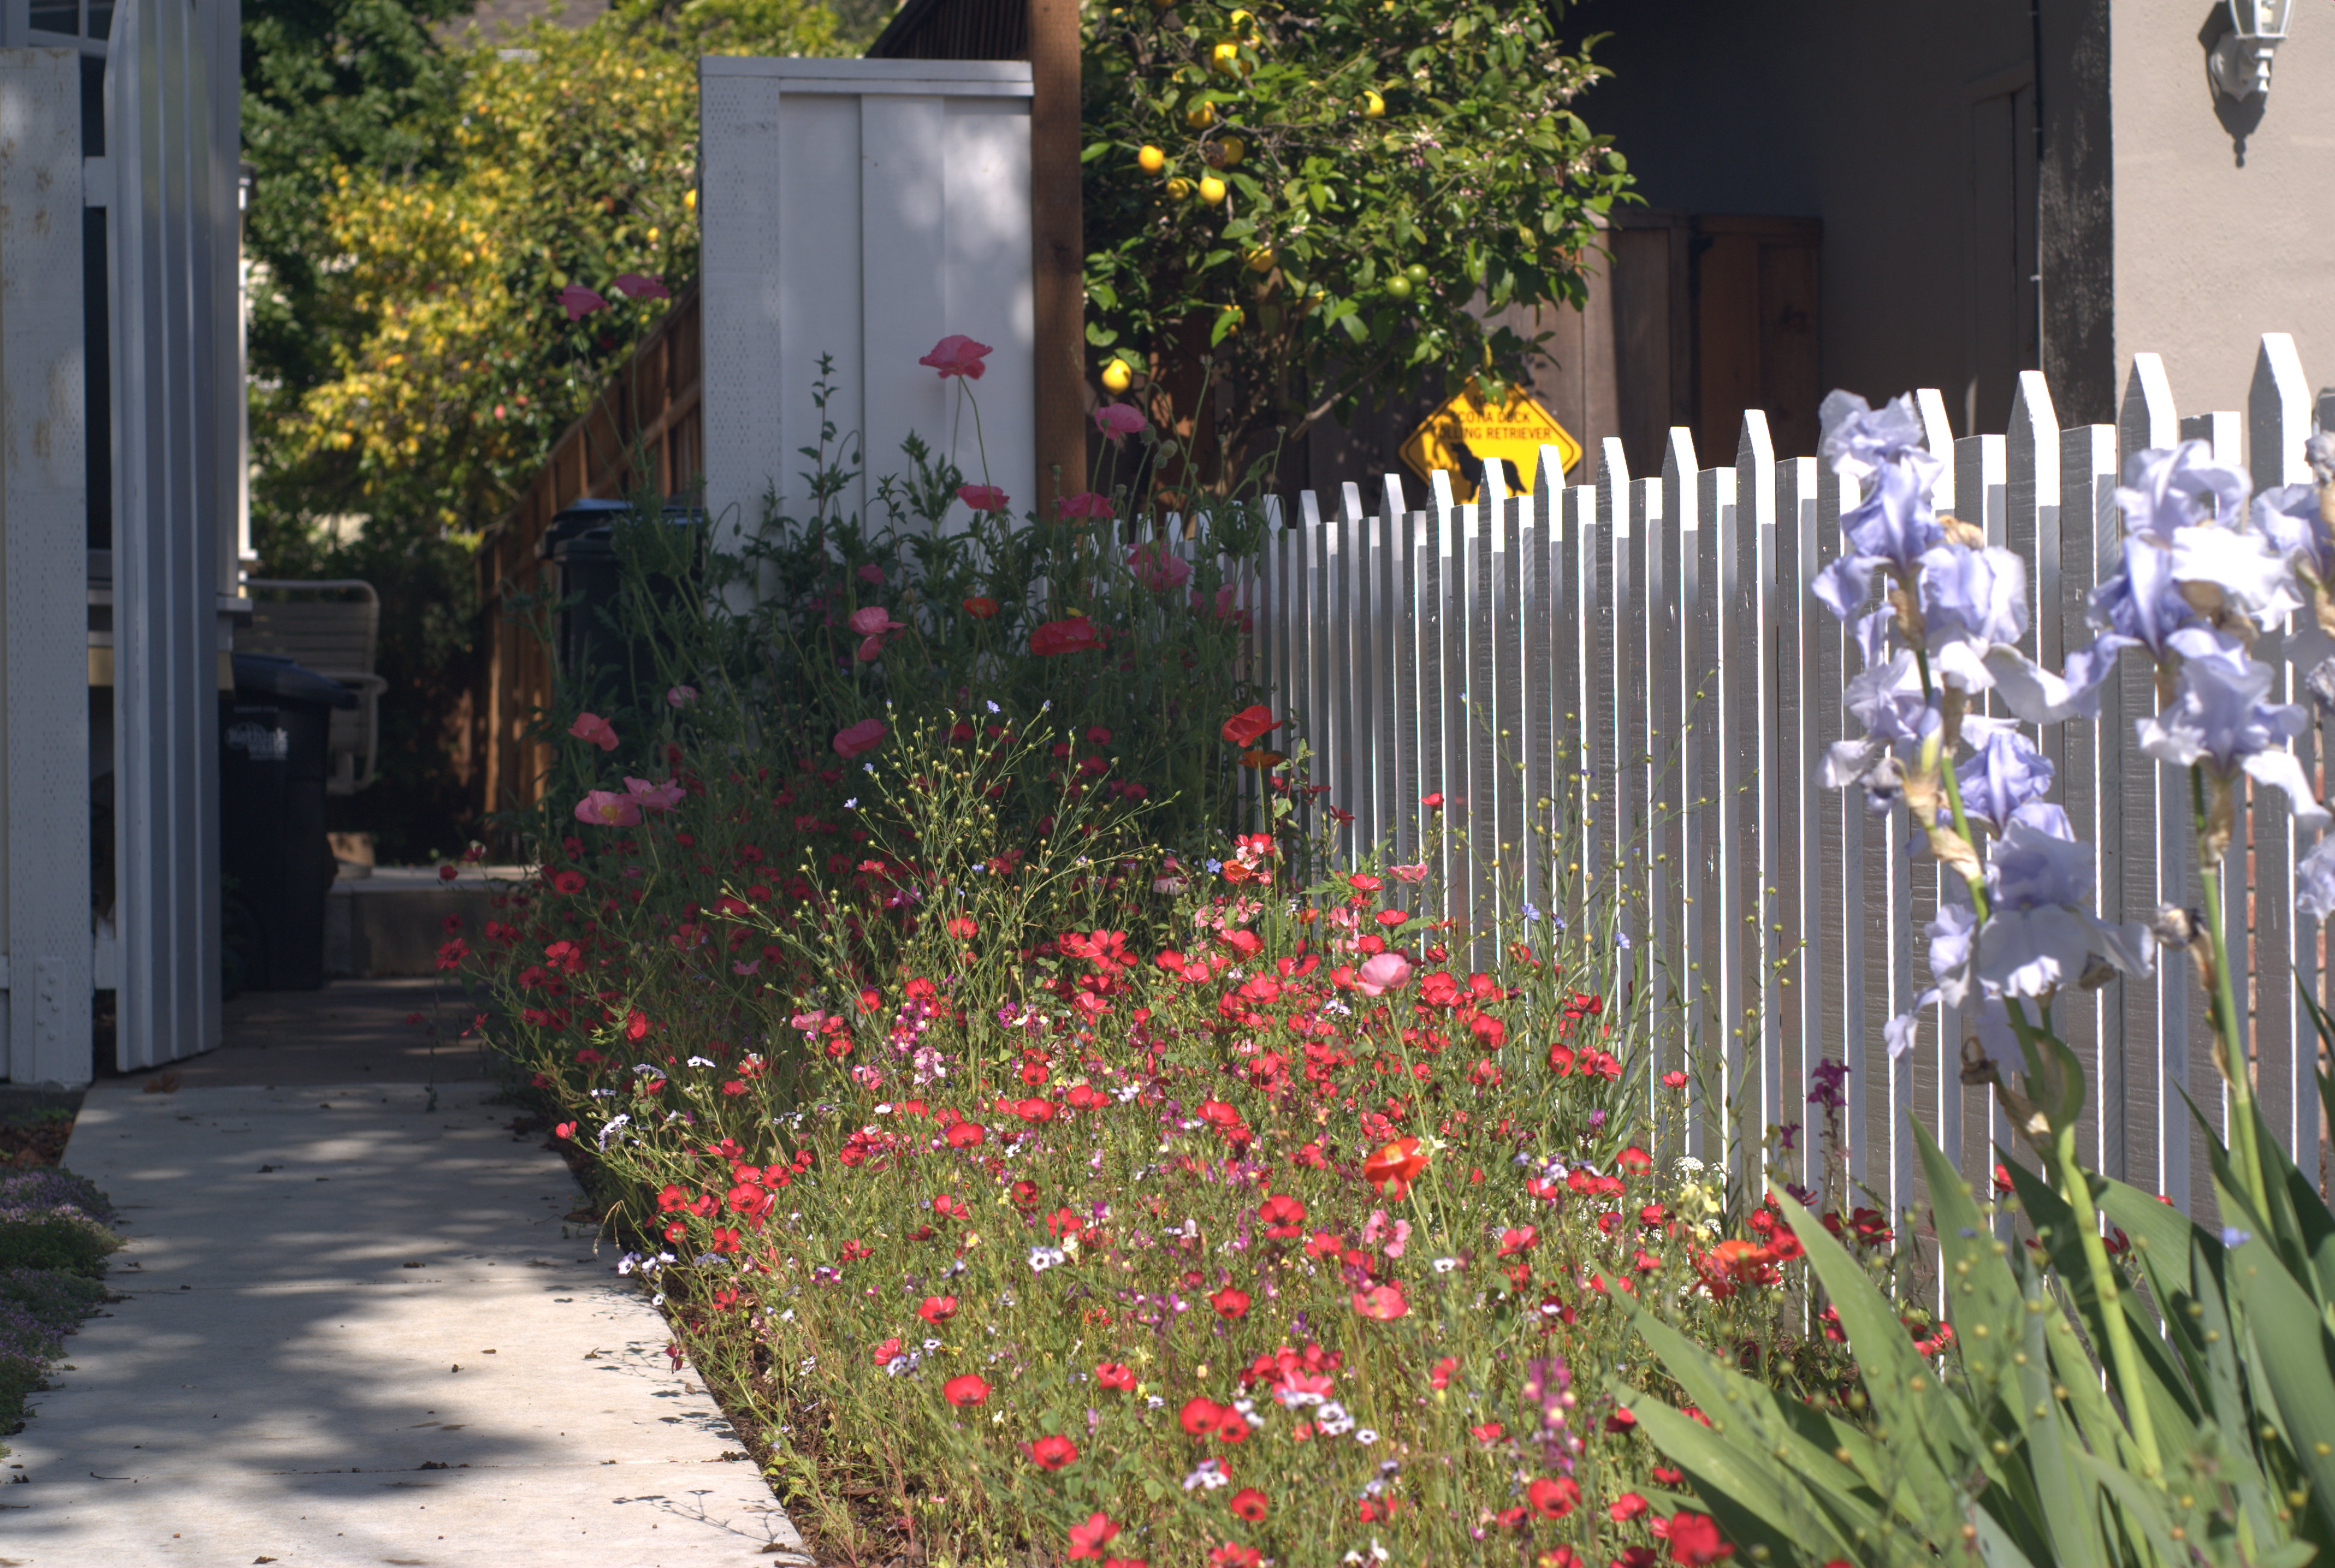 Willdflower garden, picket fence, & gate